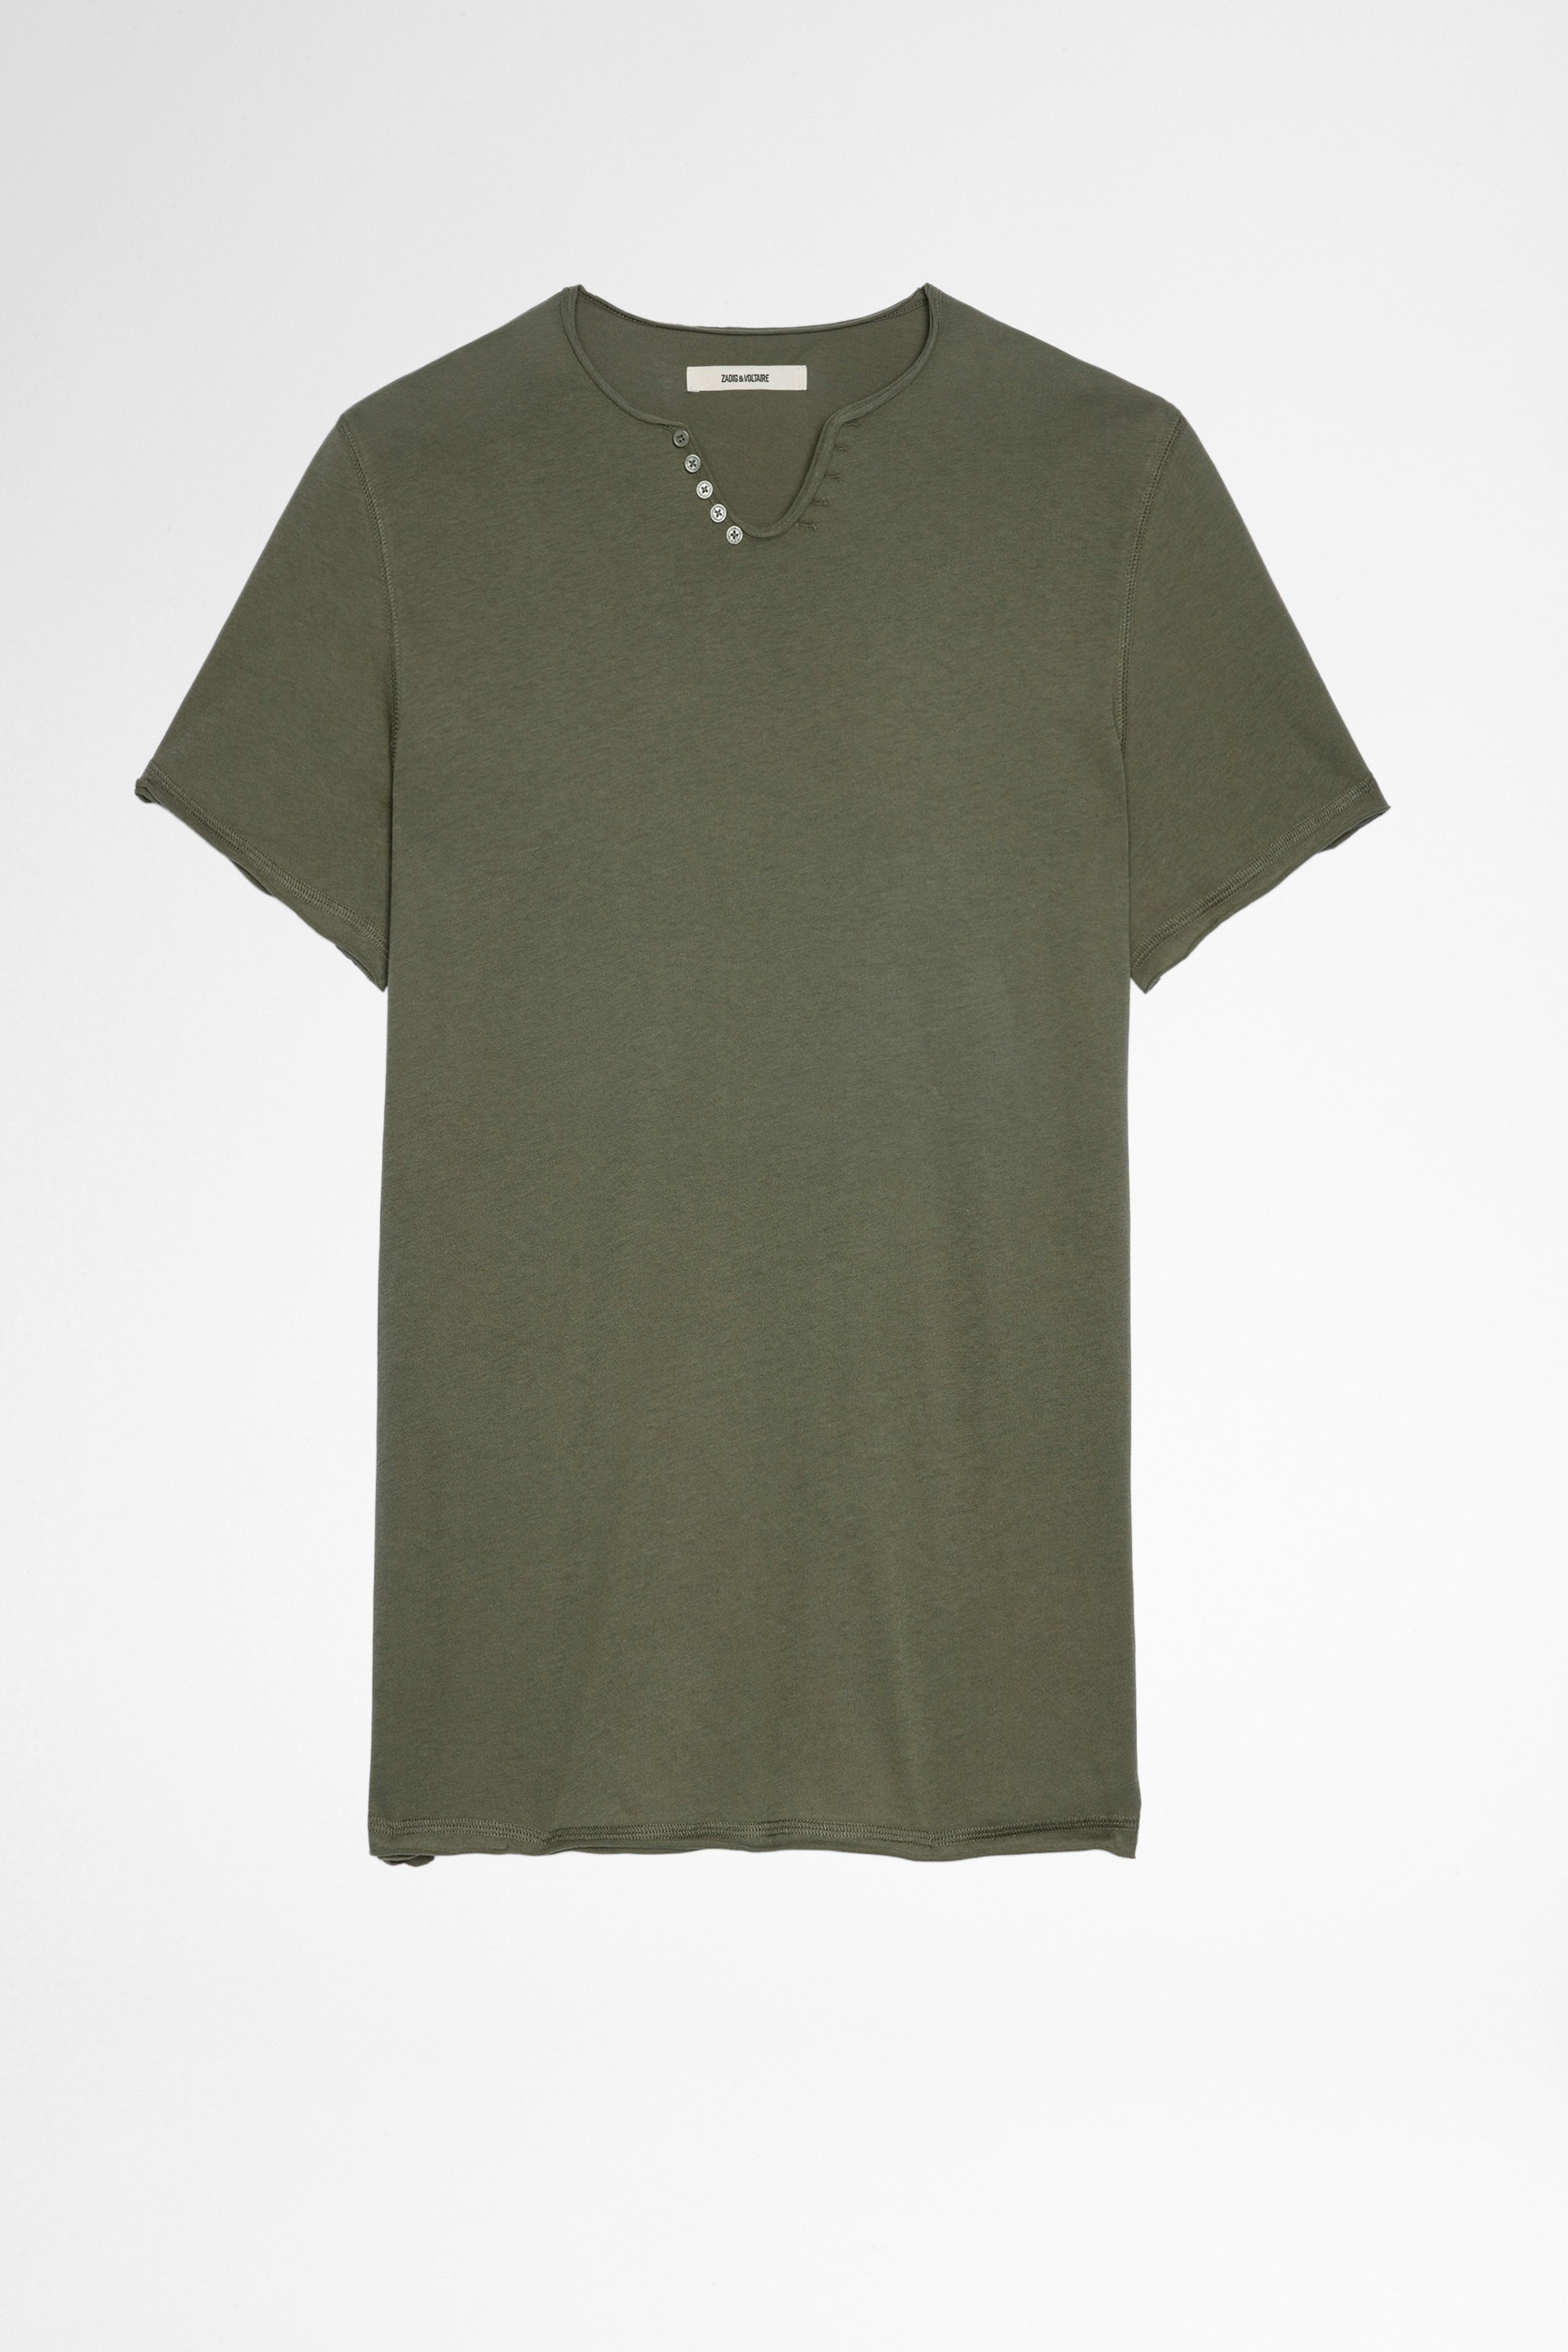 T-shirt Monastir Herren-T-shirt mit Henley-Ausschnitt aus khakifarbener Baumwolle. Dieses Produkt ist nach GOTS zertifiziert und aus Fasern aus biologischem Anbau hergestellt.